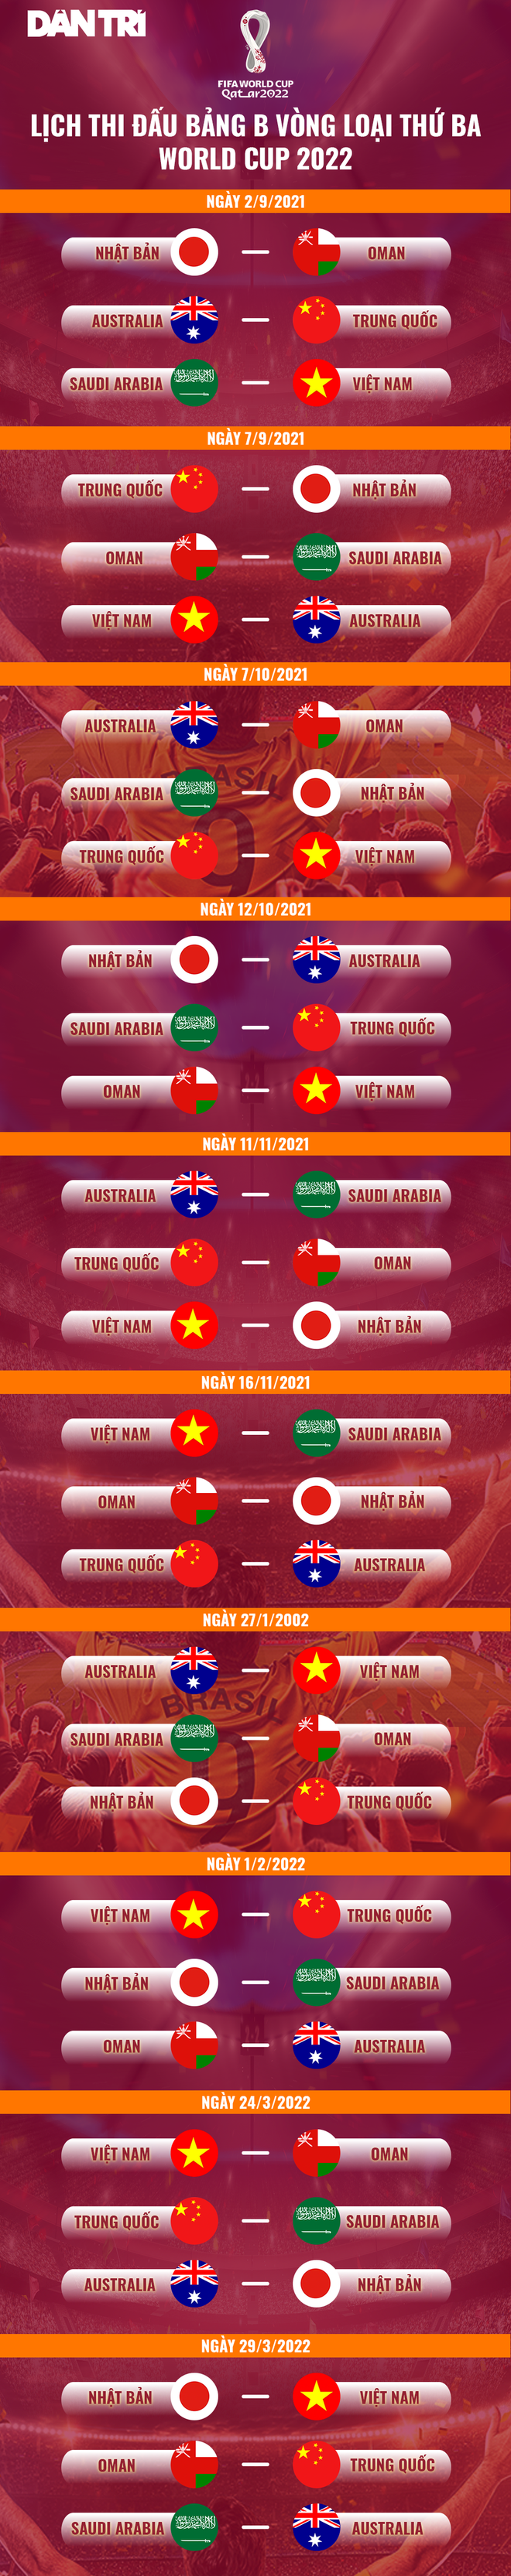 Đội tuyển Việt Nam chính thức được đá vòng loại World Cup trên sân nhà - 2